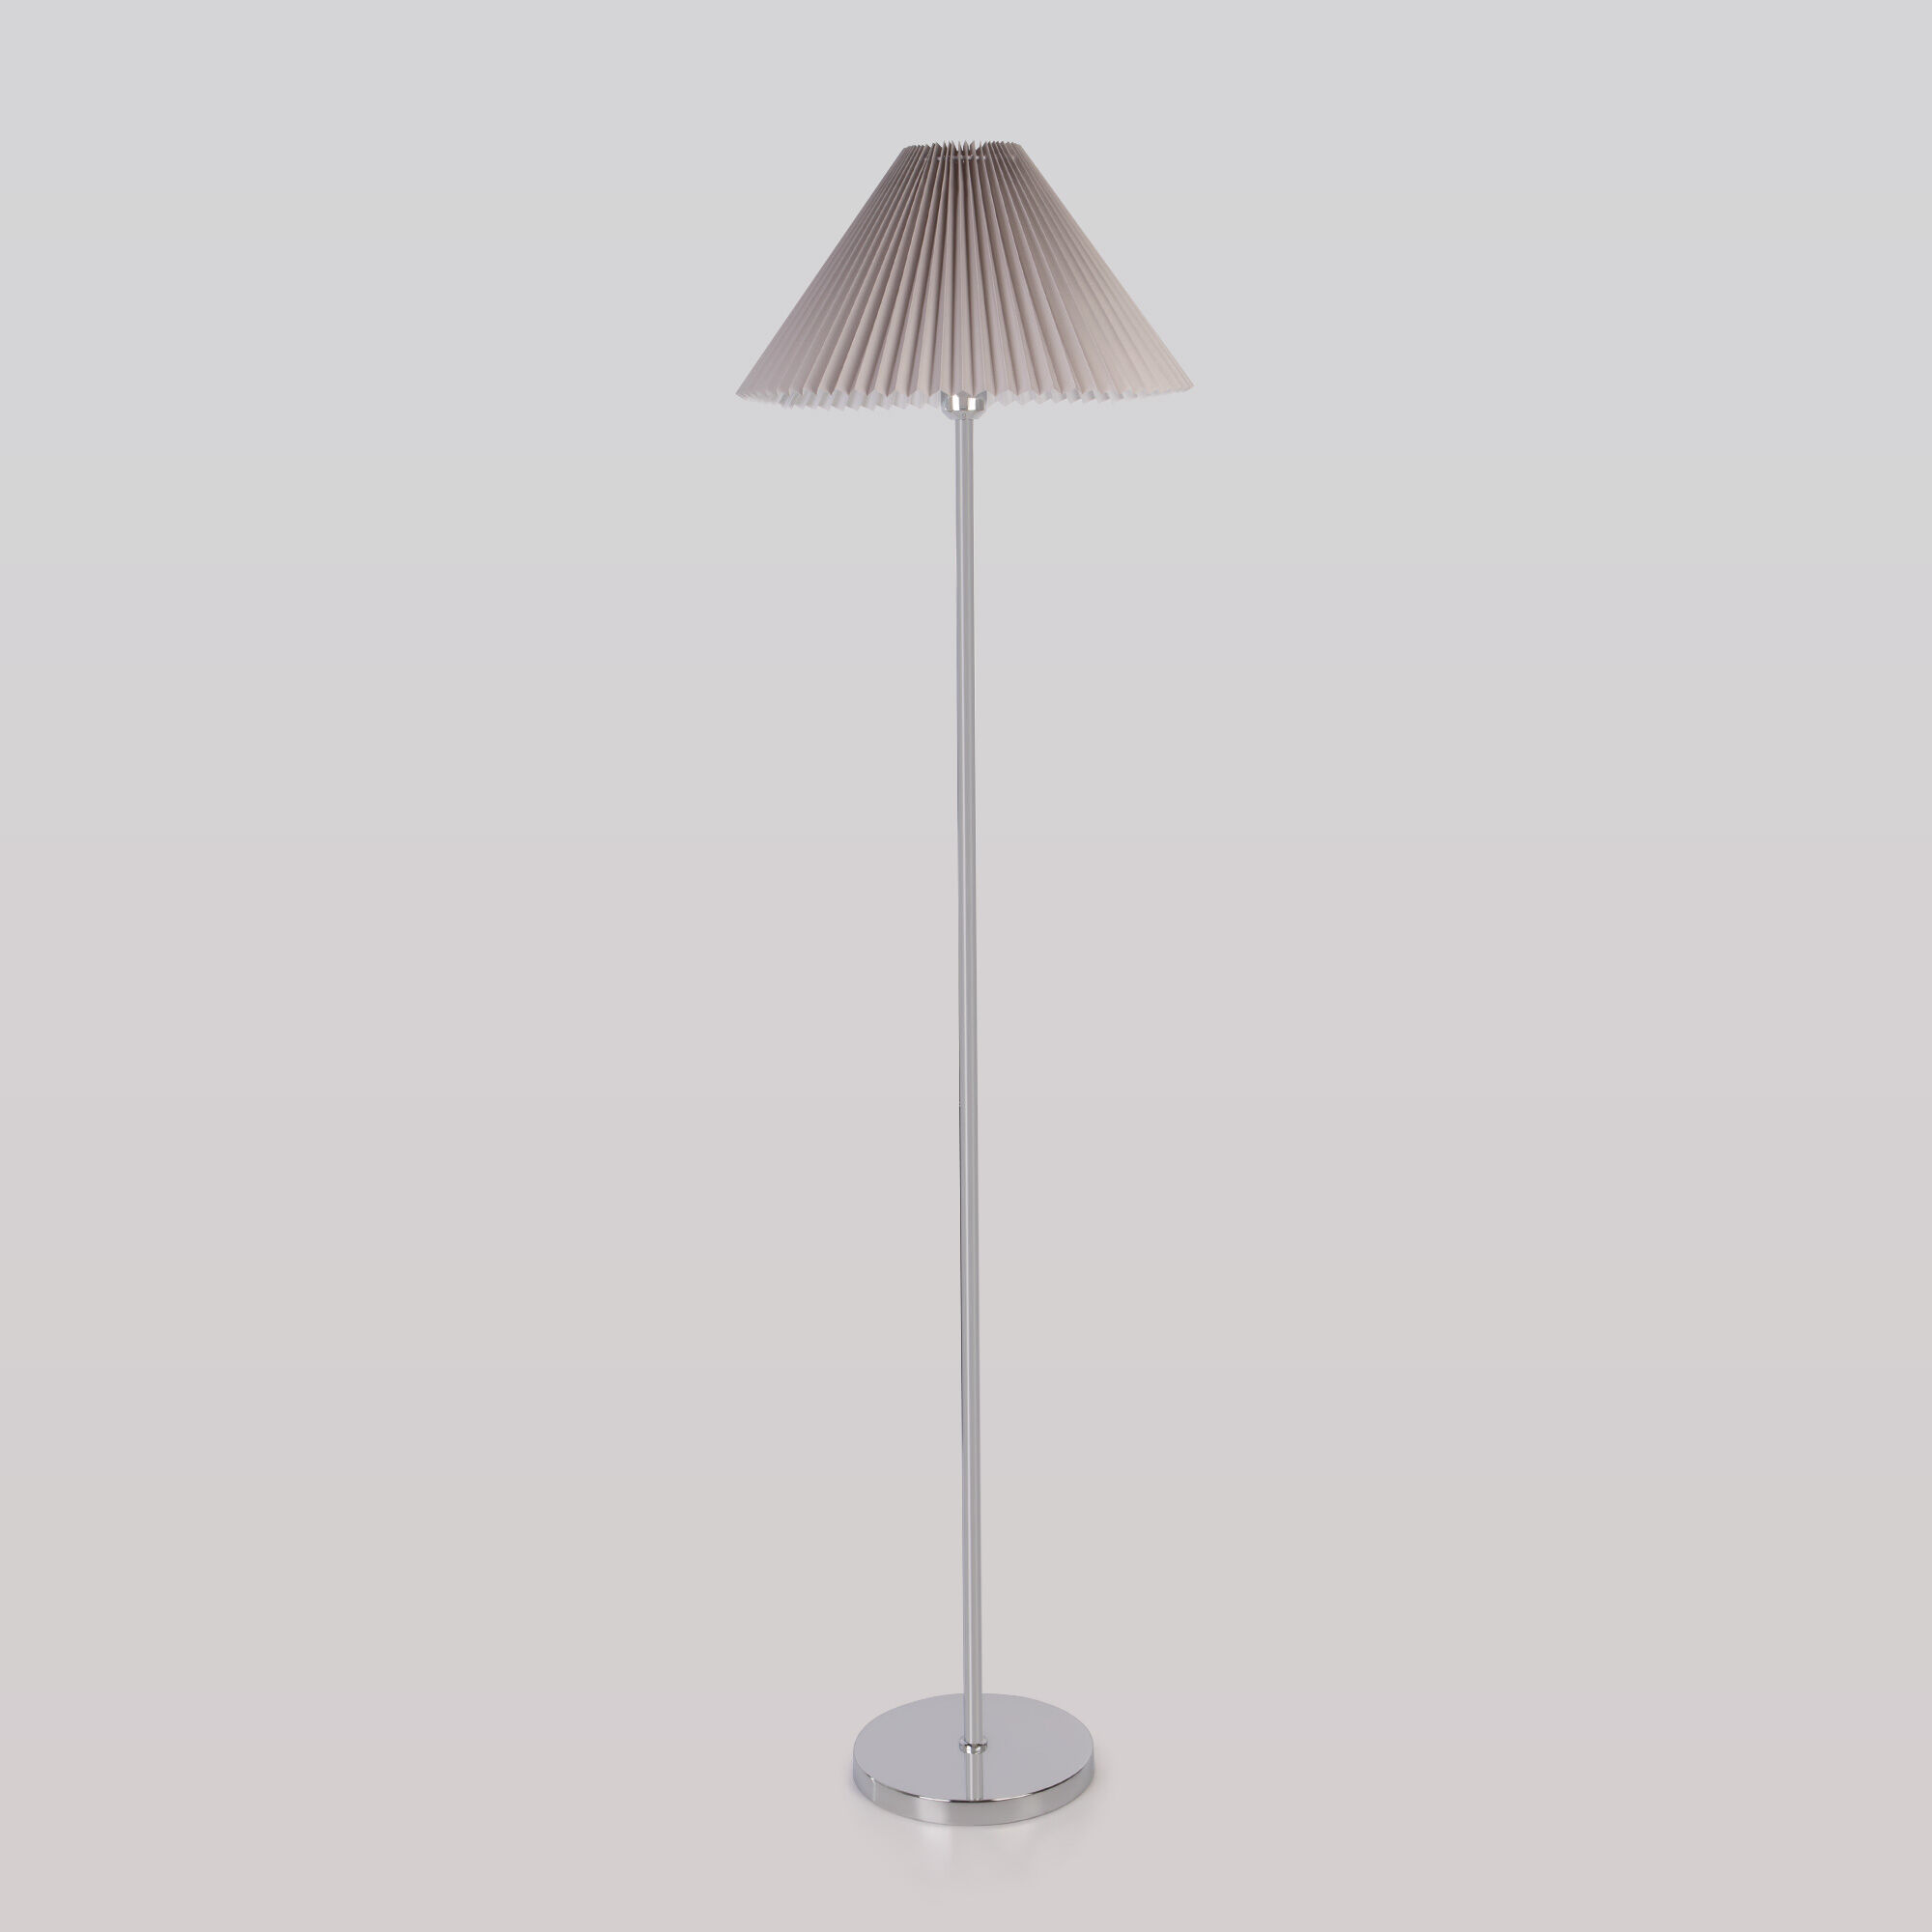 Напольный светильник с тканевым абажуром 01133/1 хром/серый 01133/1 хром/серый